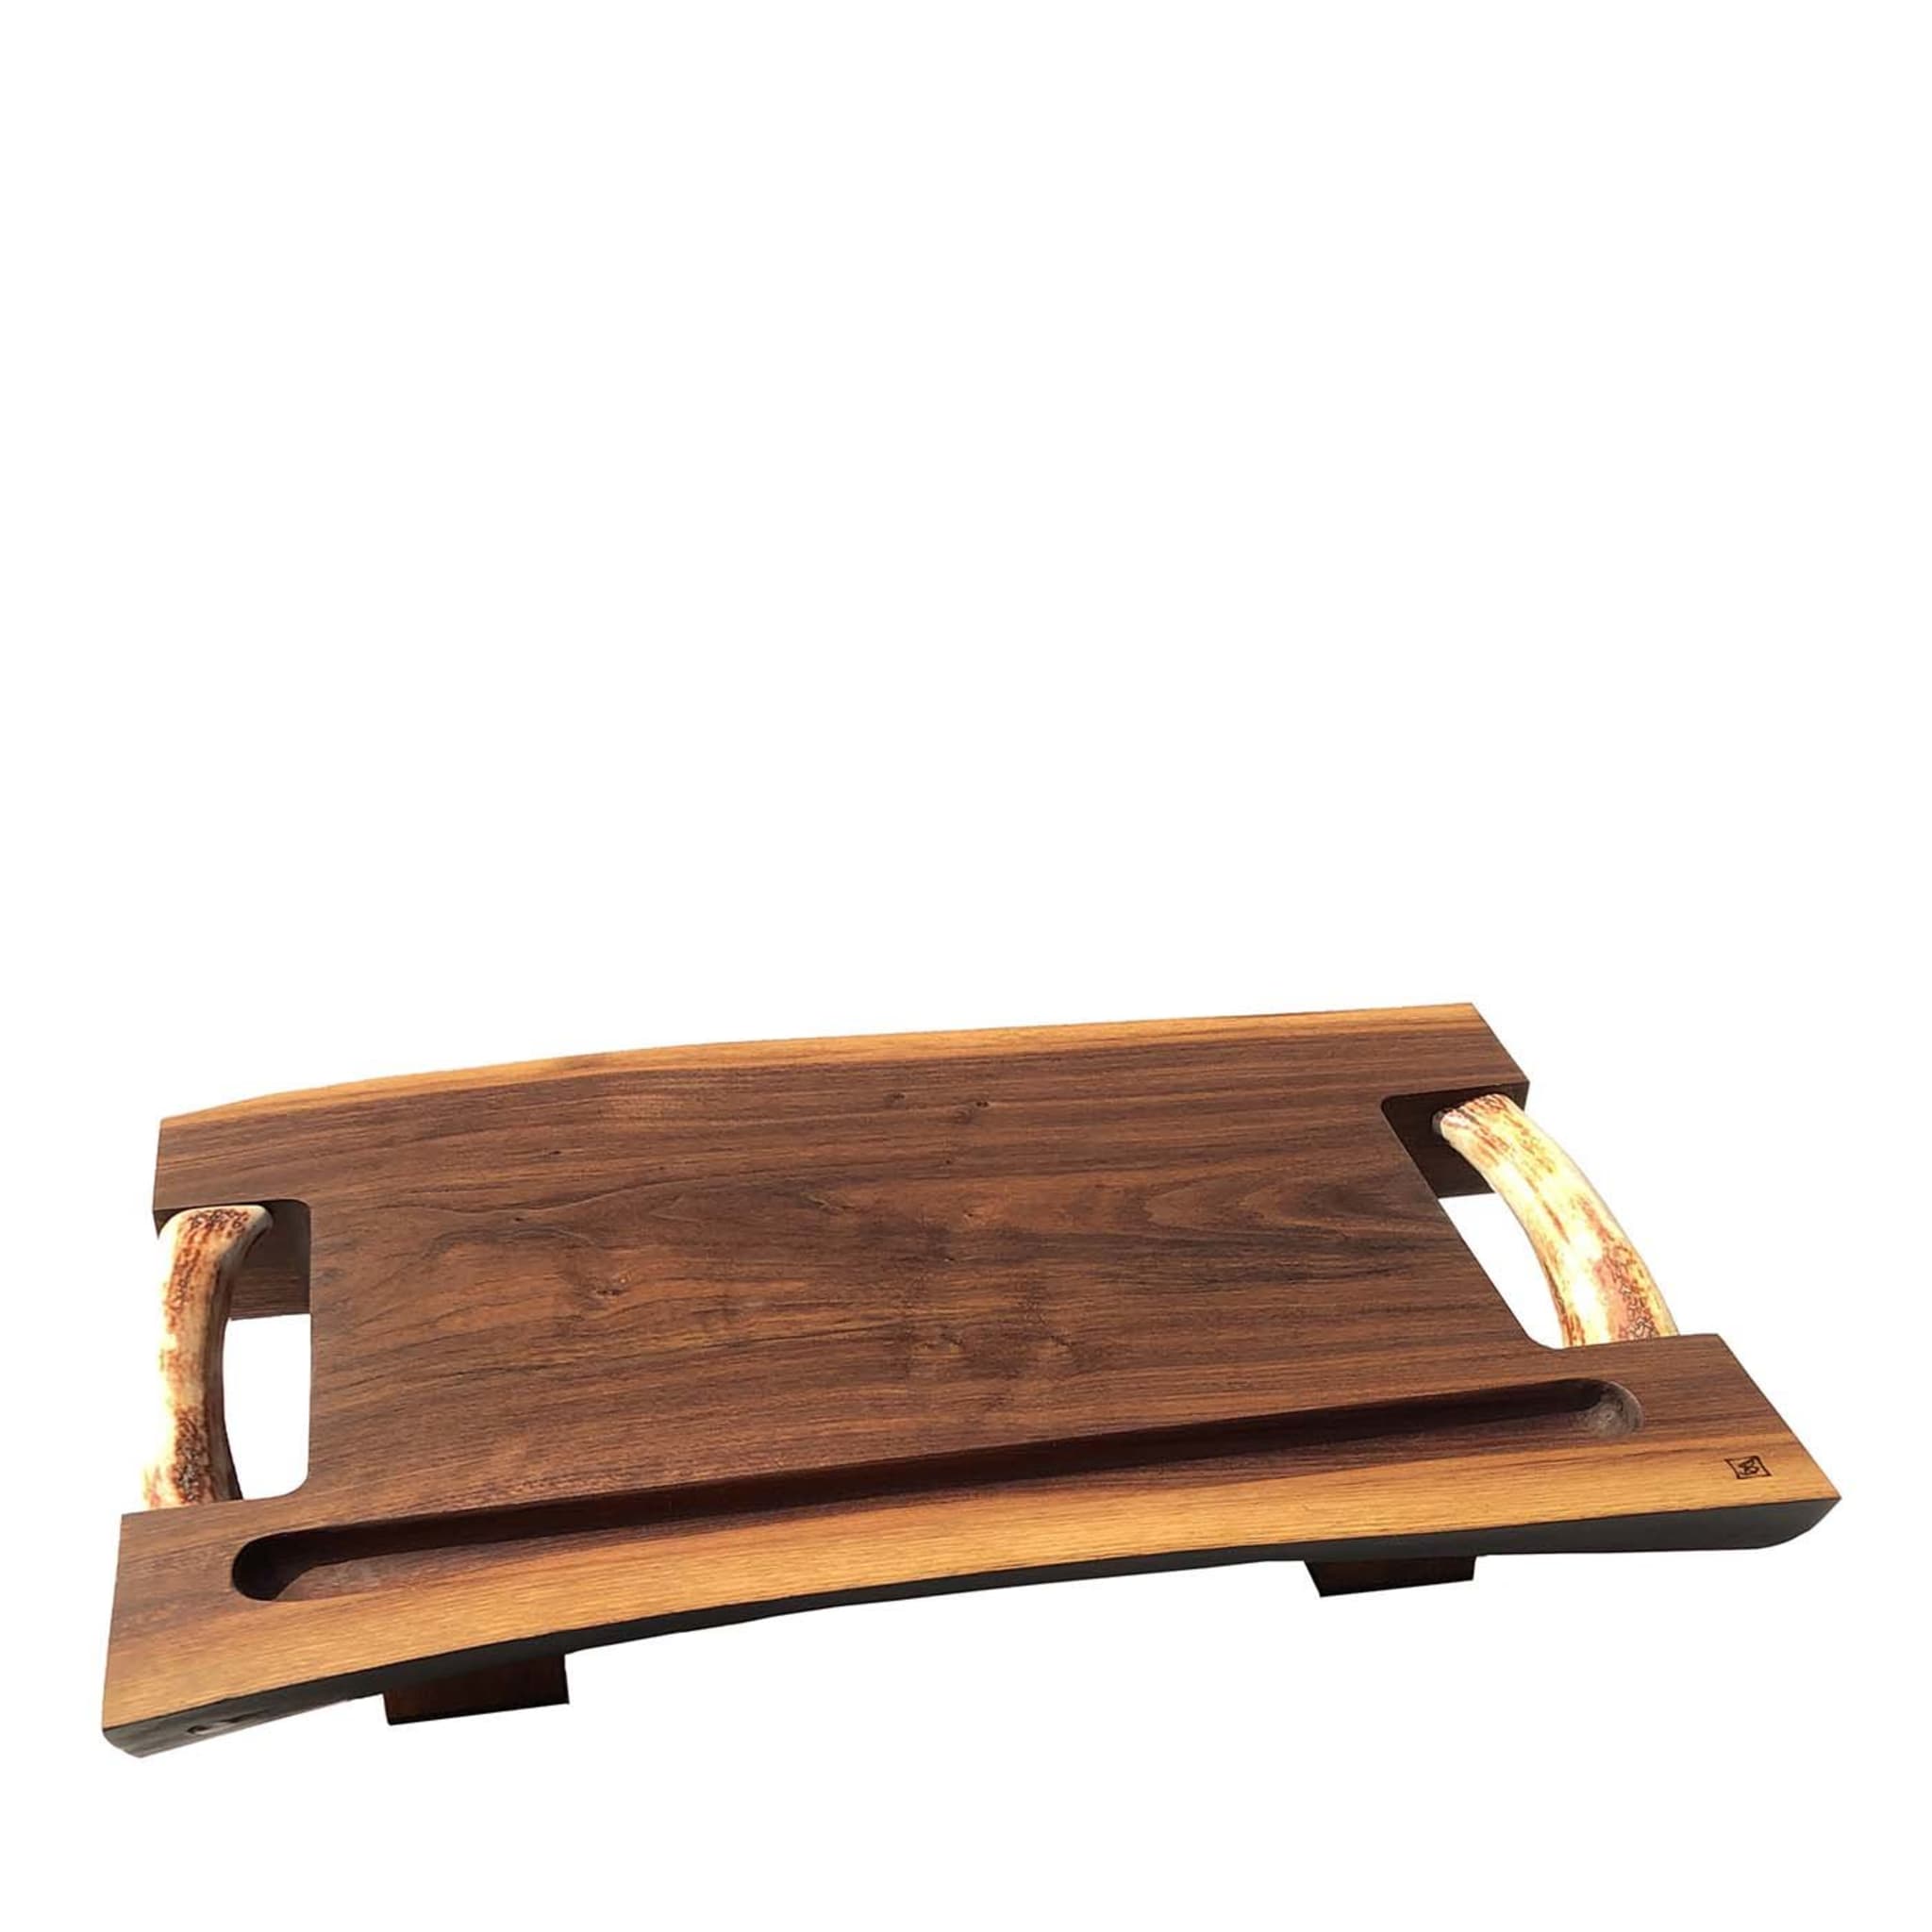 Walnut Wood Cutting Board - Main view